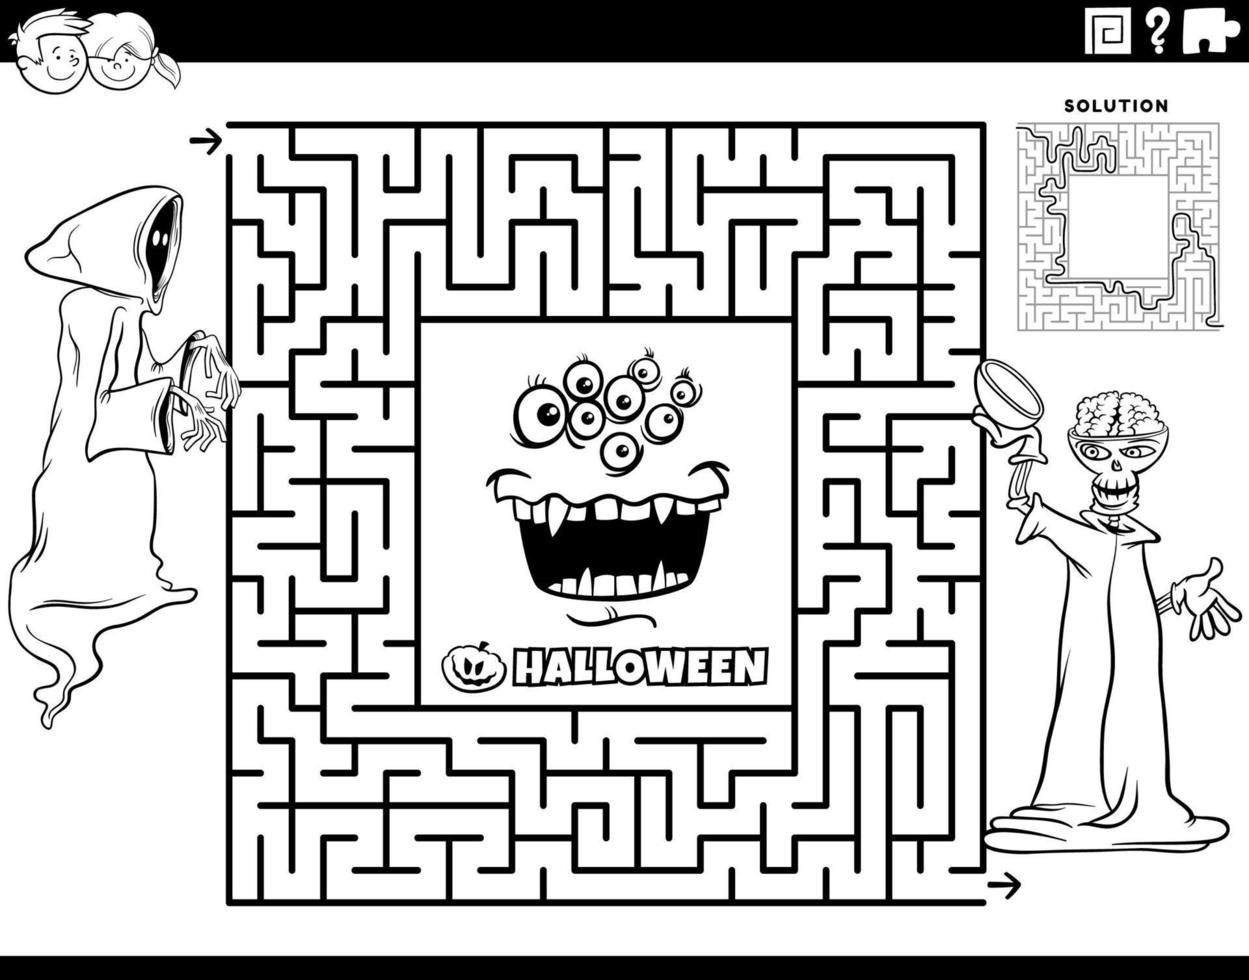 labyrinth mit skelett und monster auf halloween-malseite vektor